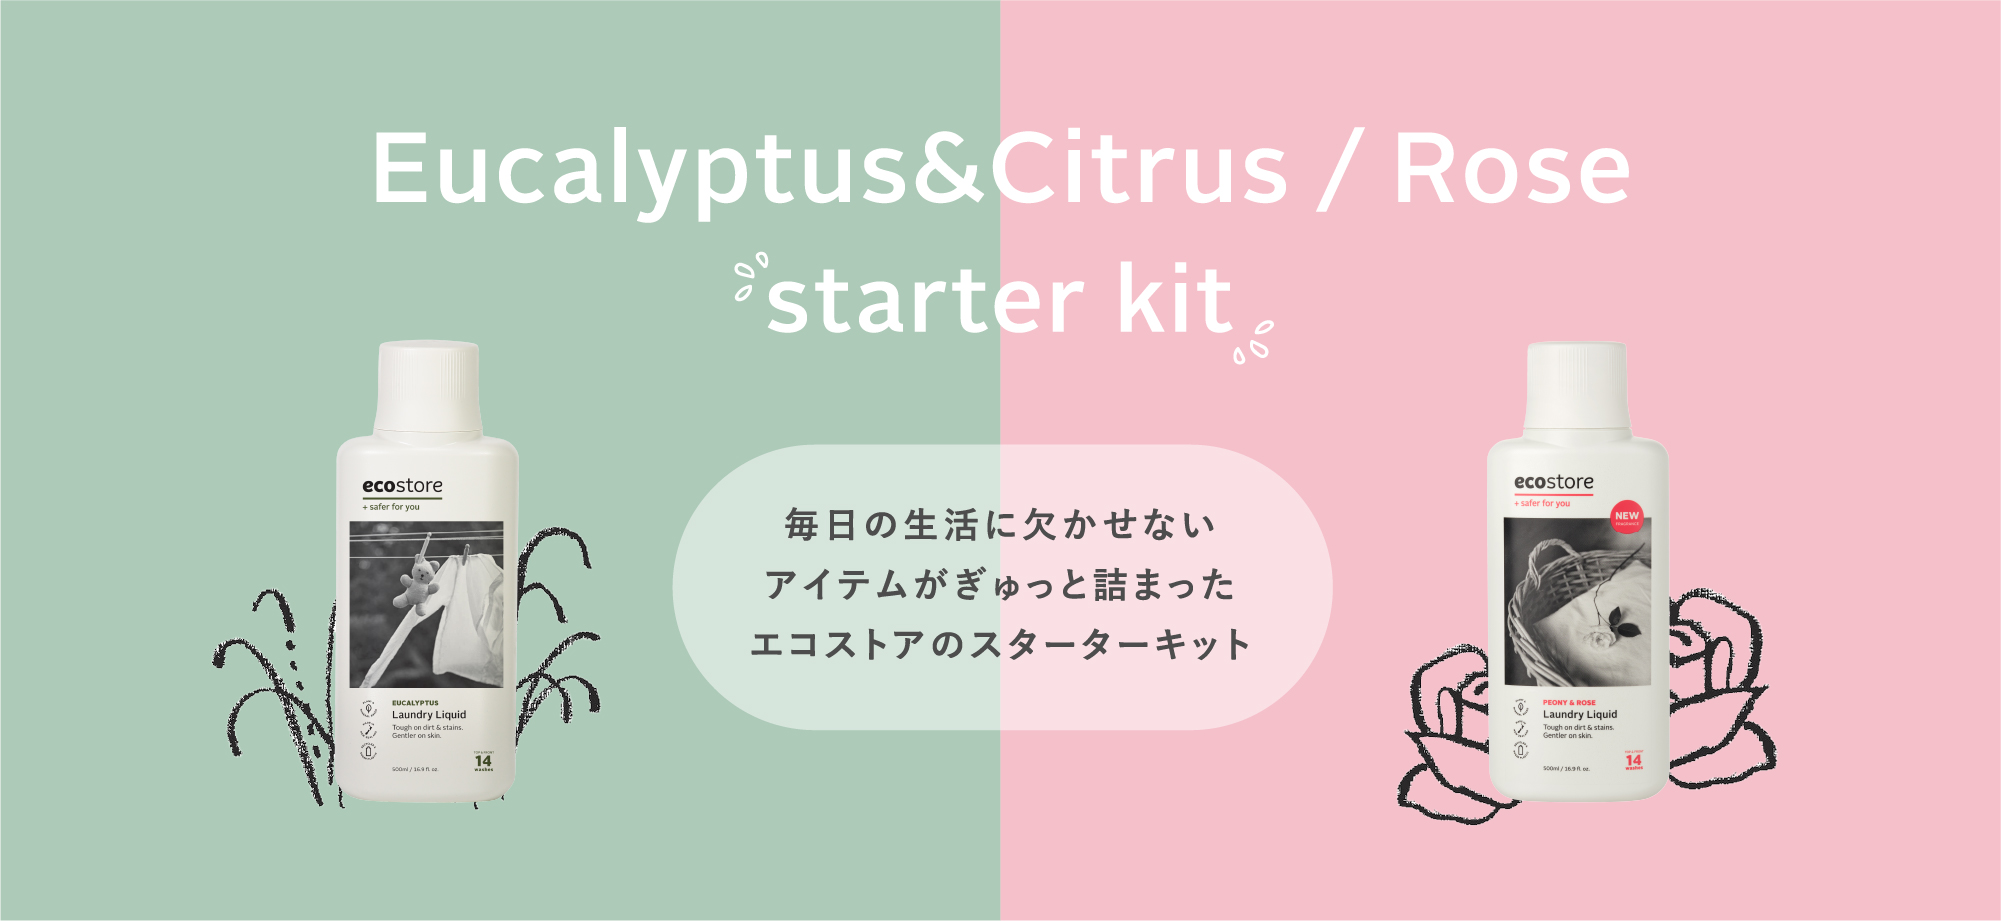 Eucalyptus&Citrus / Rose starter kit